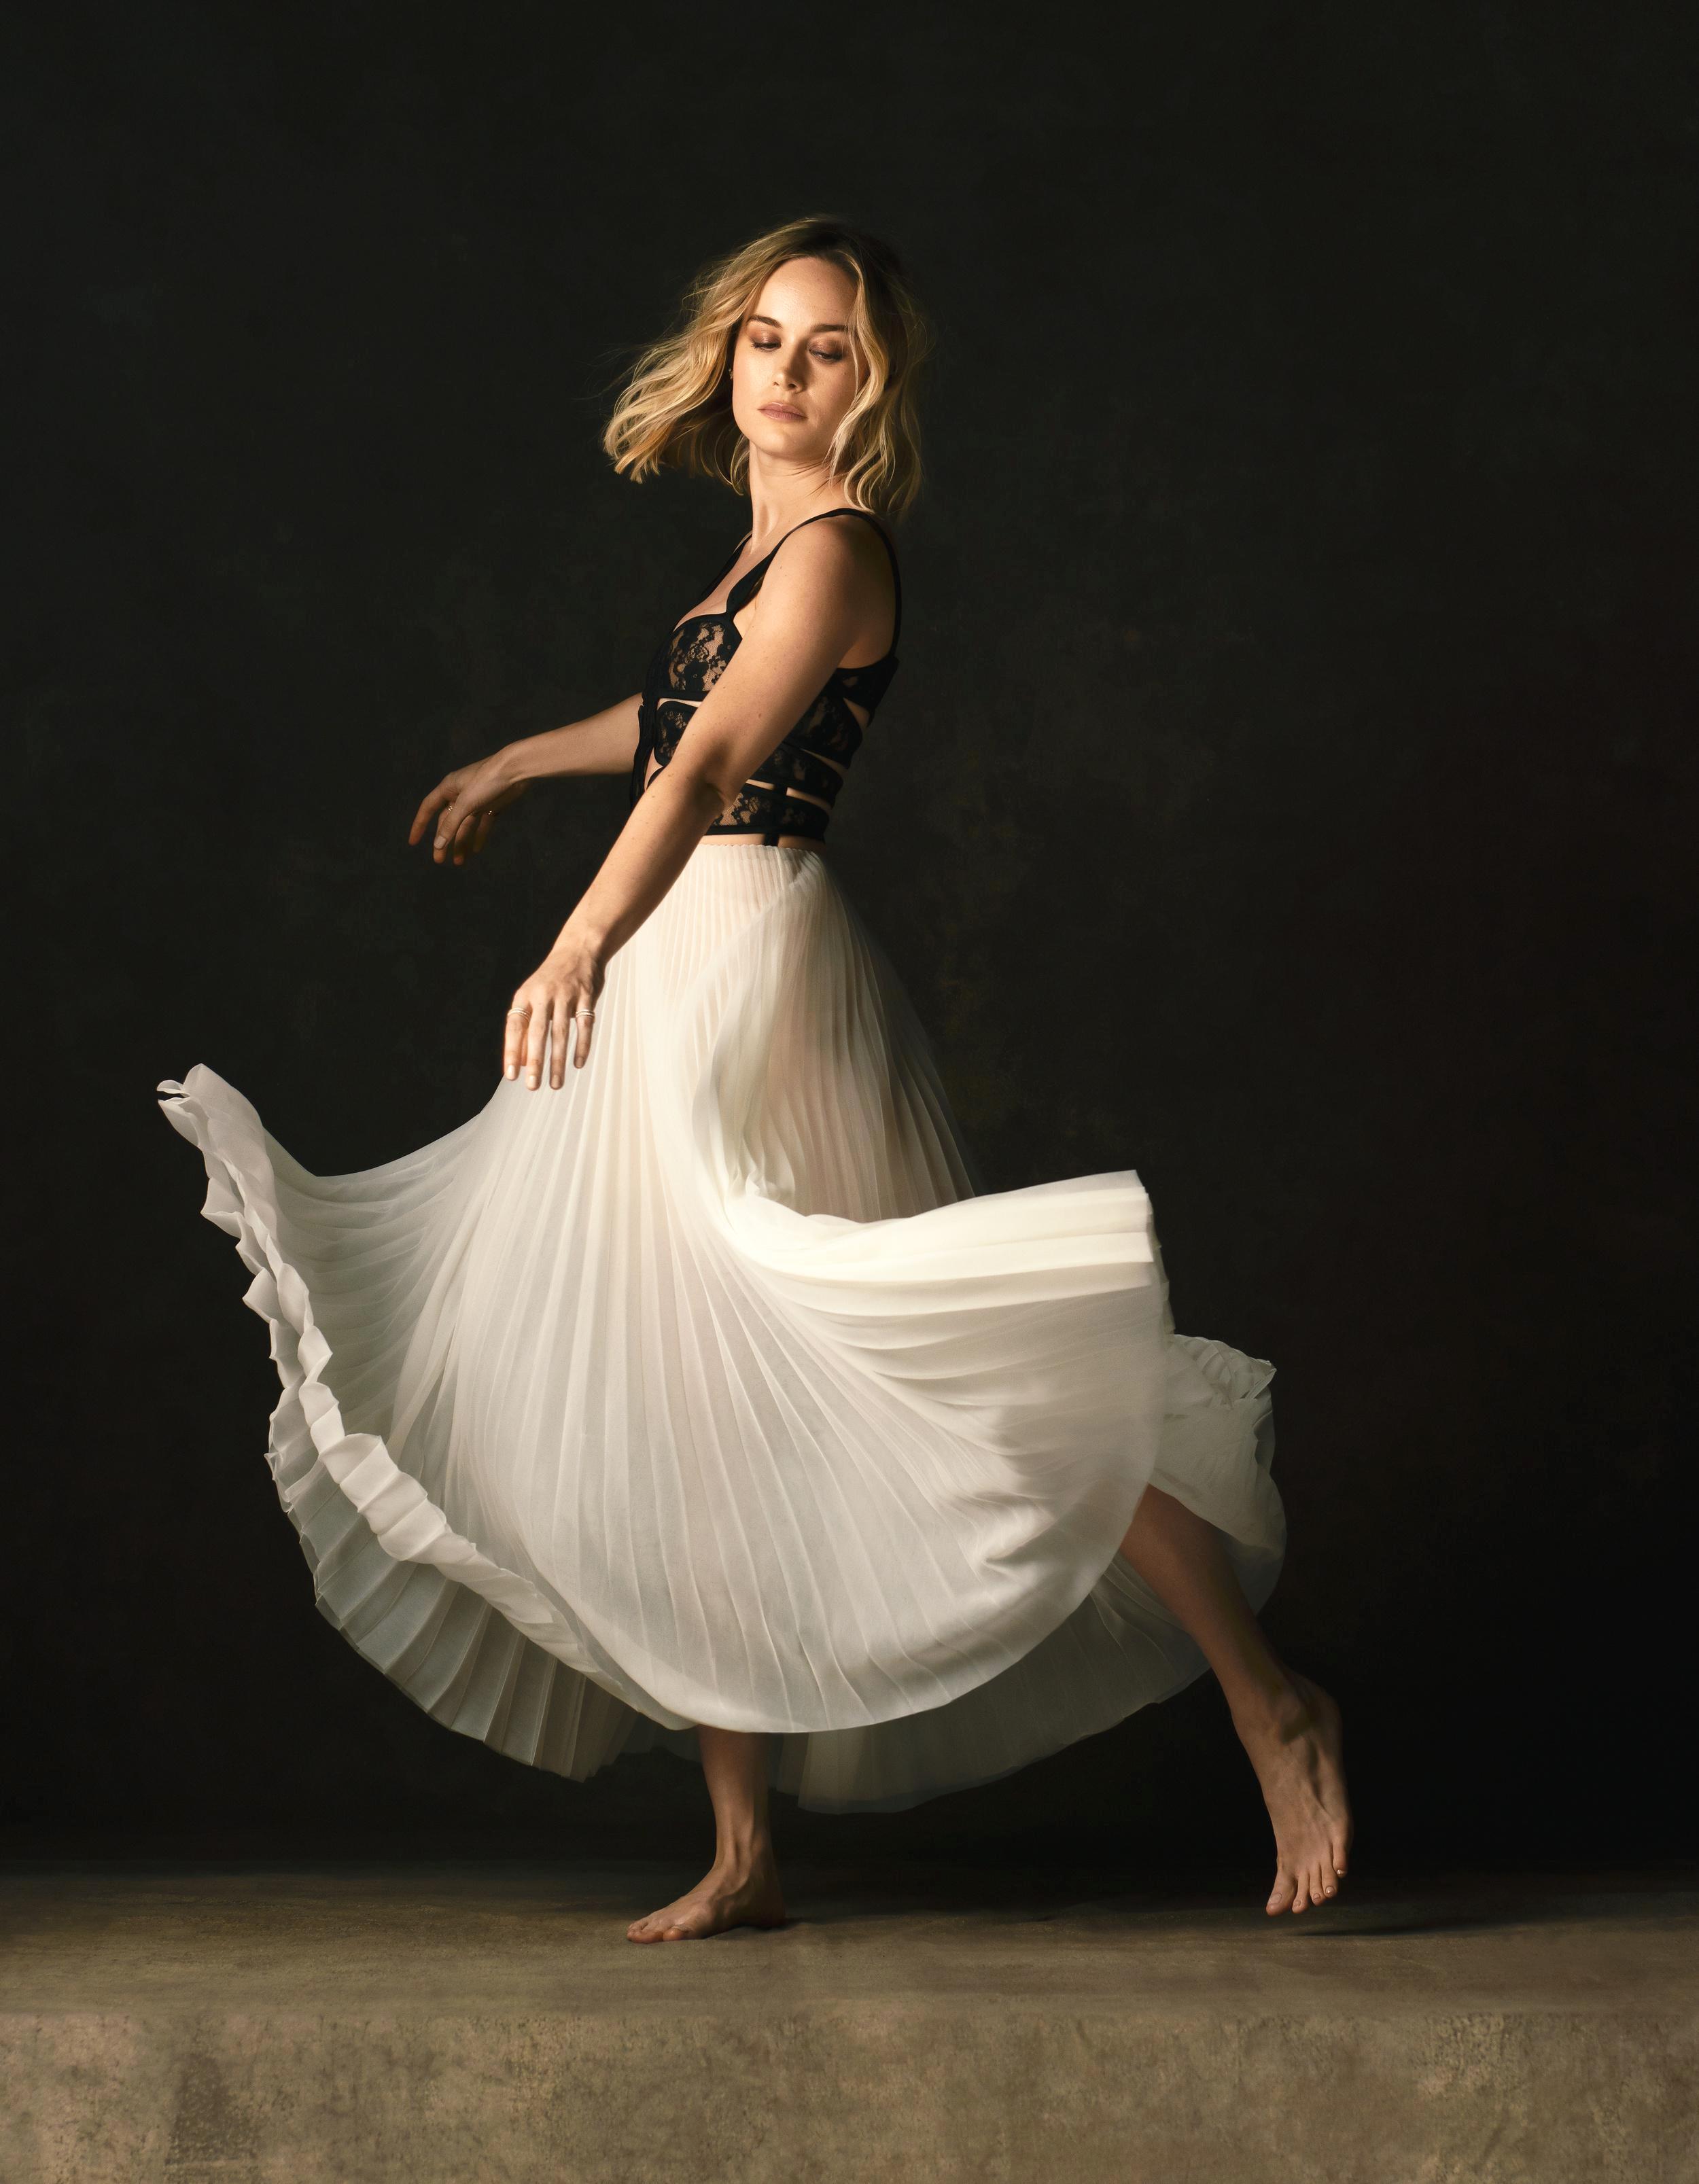 https://pics.wikifeet.com/Brie-Larson-Feet-4190356.jpg